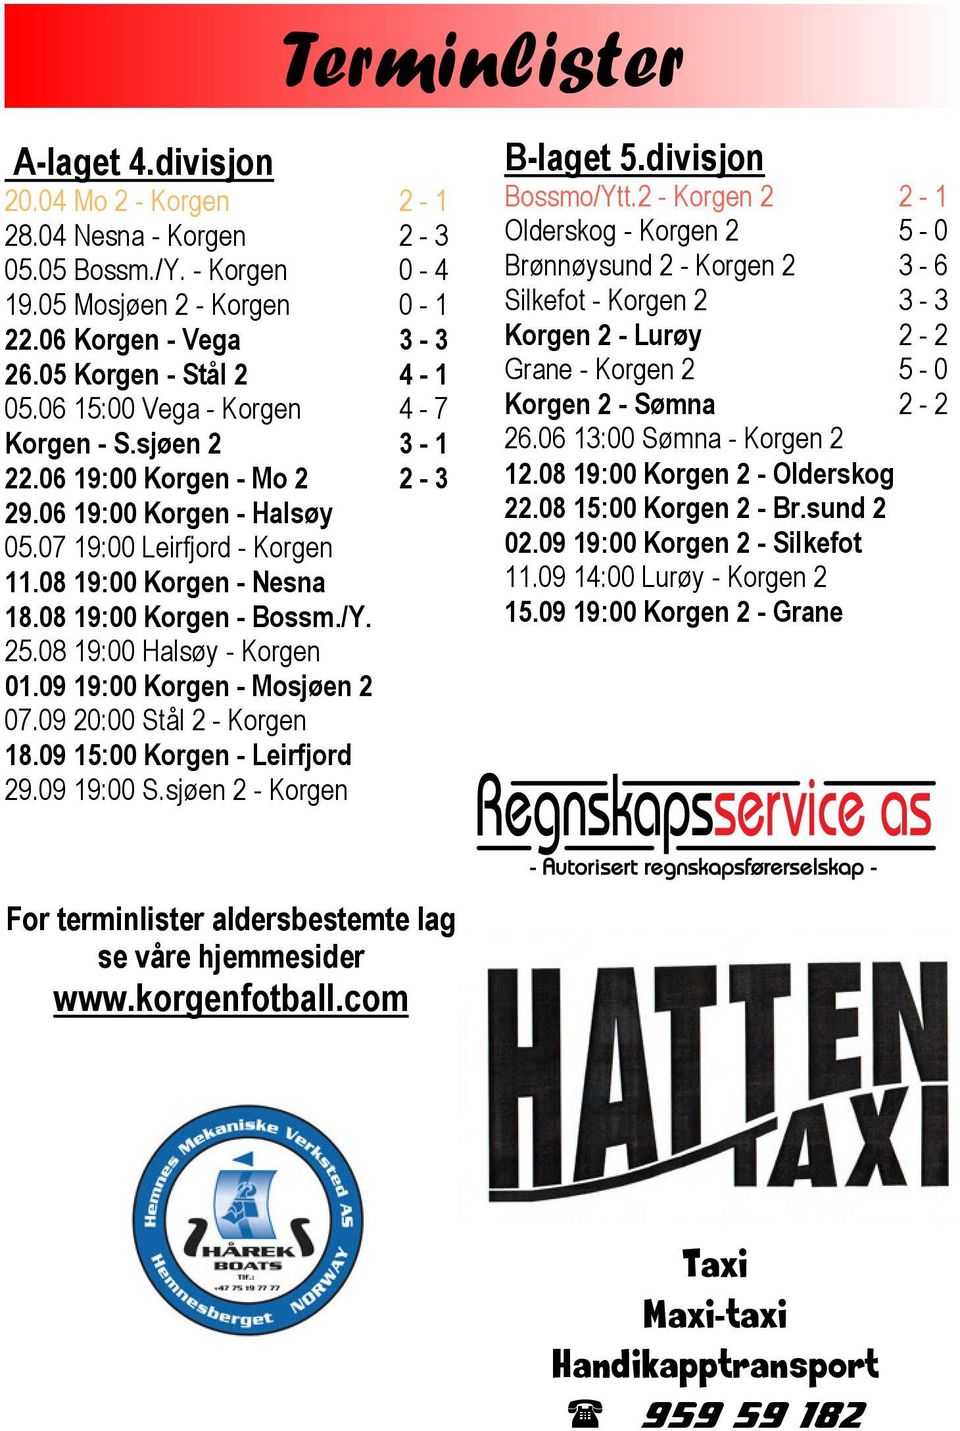 08 19:00 Halsøy - Korgen 01.09 19:00 Korgen - Mosjøen 2 07.09 20:00 Stål 2 - Korgen 18.09 15:00 Korgen - Leirfjord 29.09 19:00 S.sjøen 2 - Korgen Terminlister B-laget 5.divisjon Bossmo/Ytt.